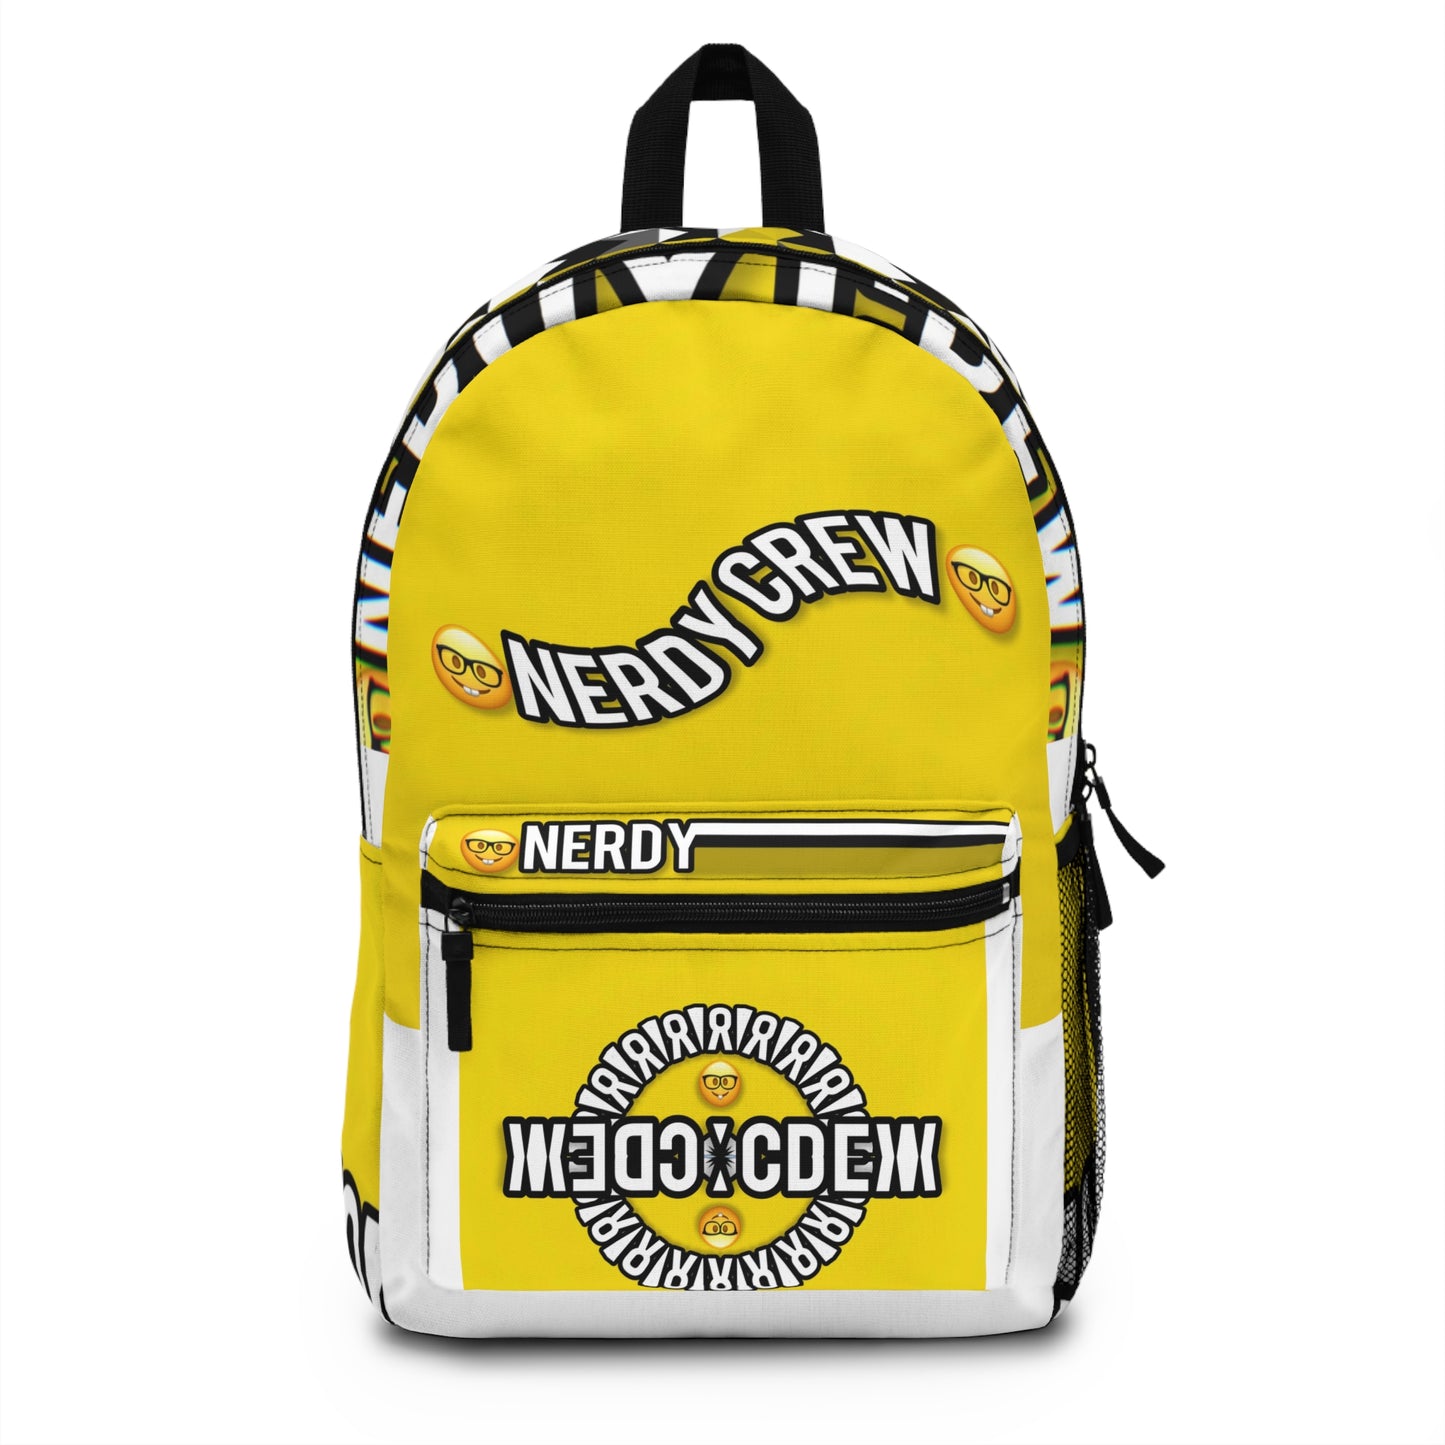 1b Nerdy Crew Backpack